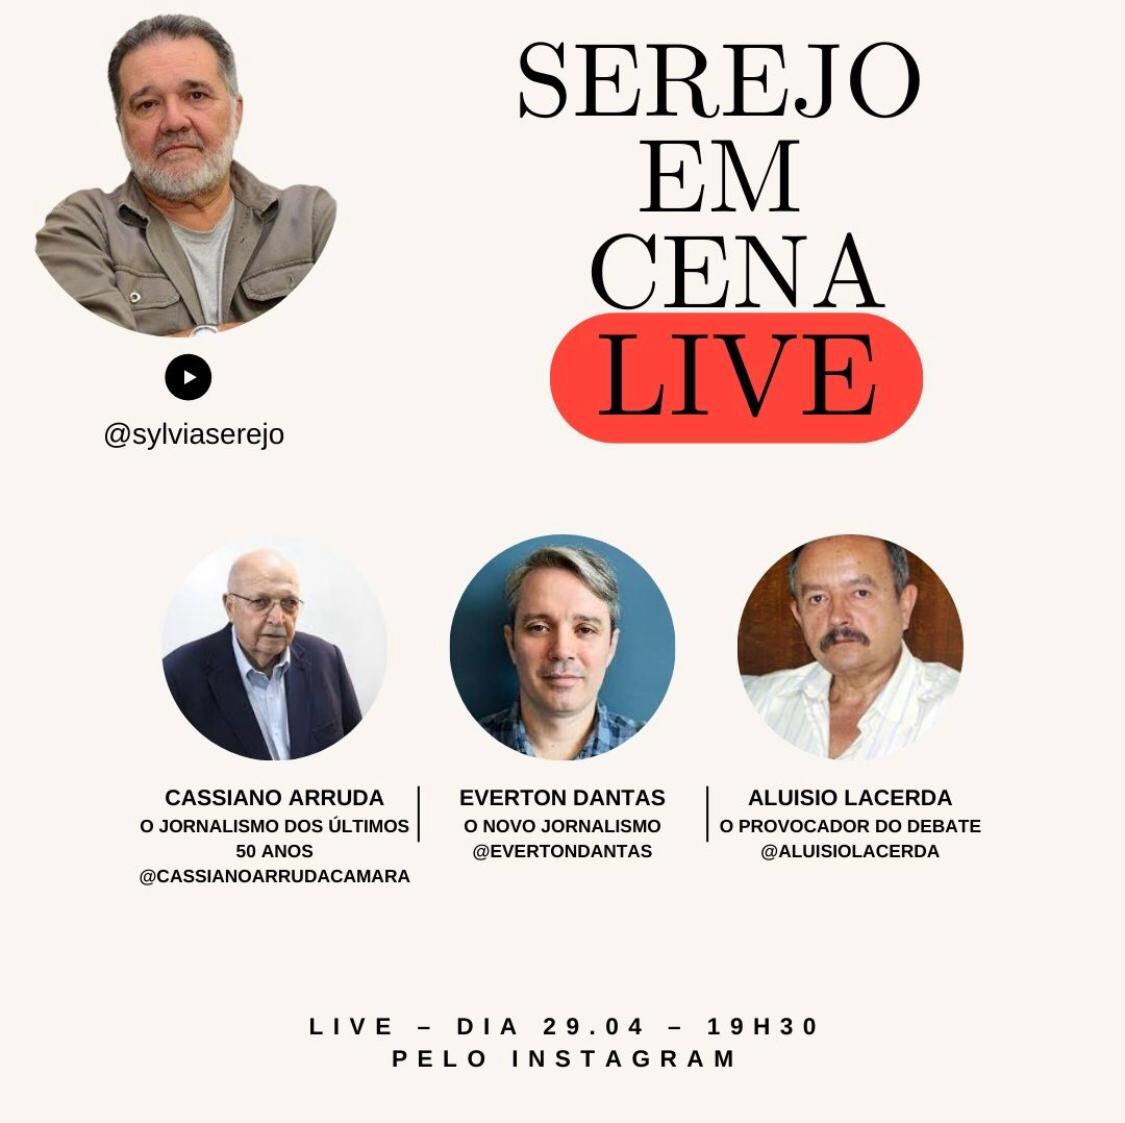 Live Serejo